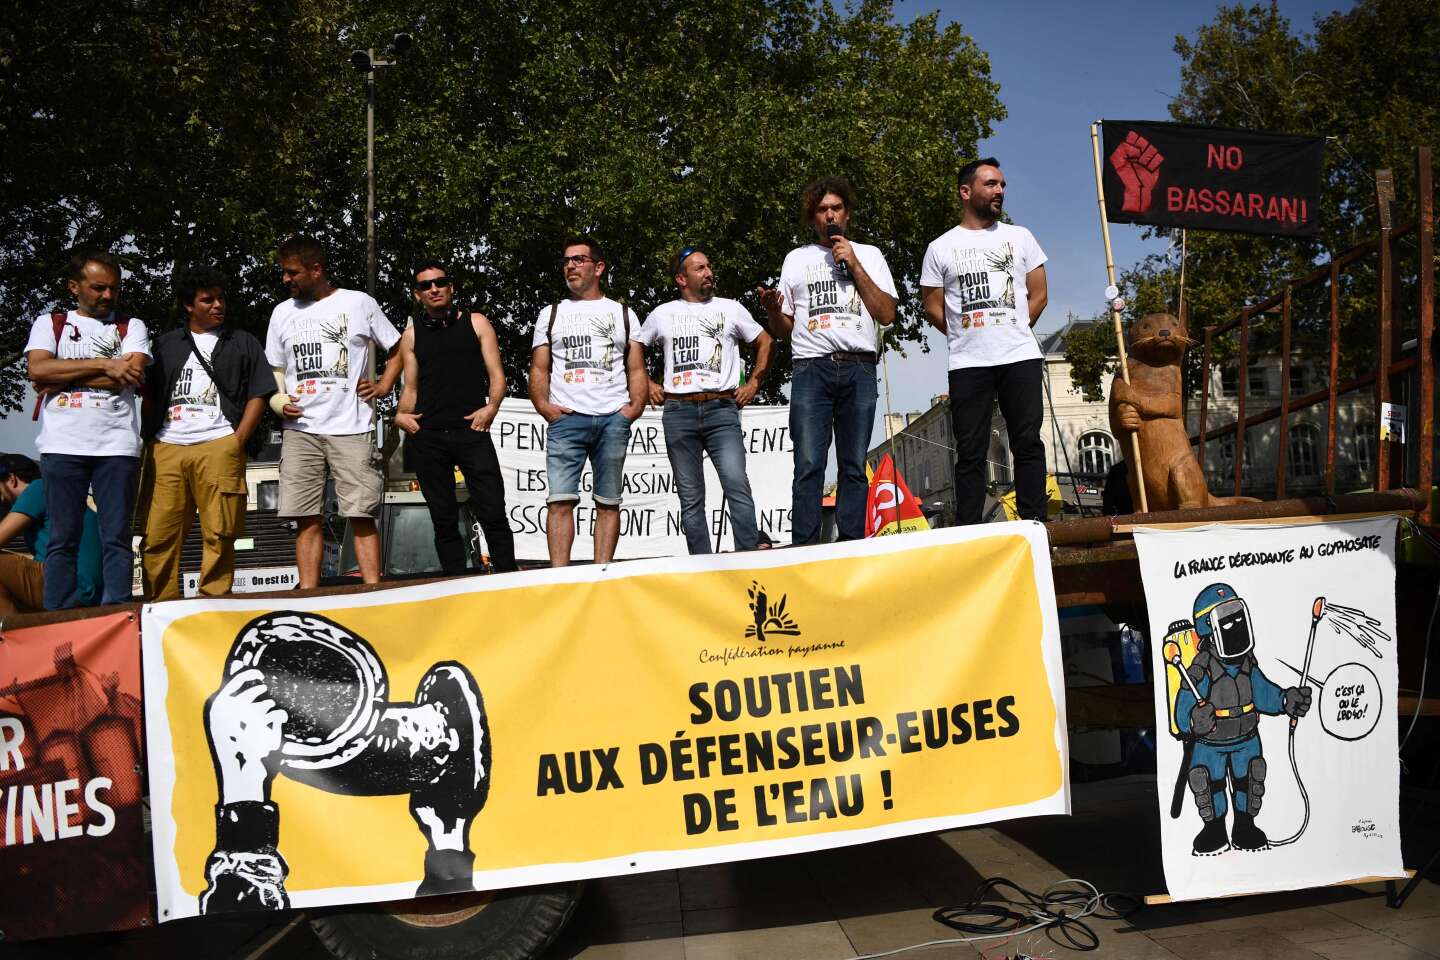 Sainte-Soline : prison avec sursis pour des manifestations illégales contre les bassines